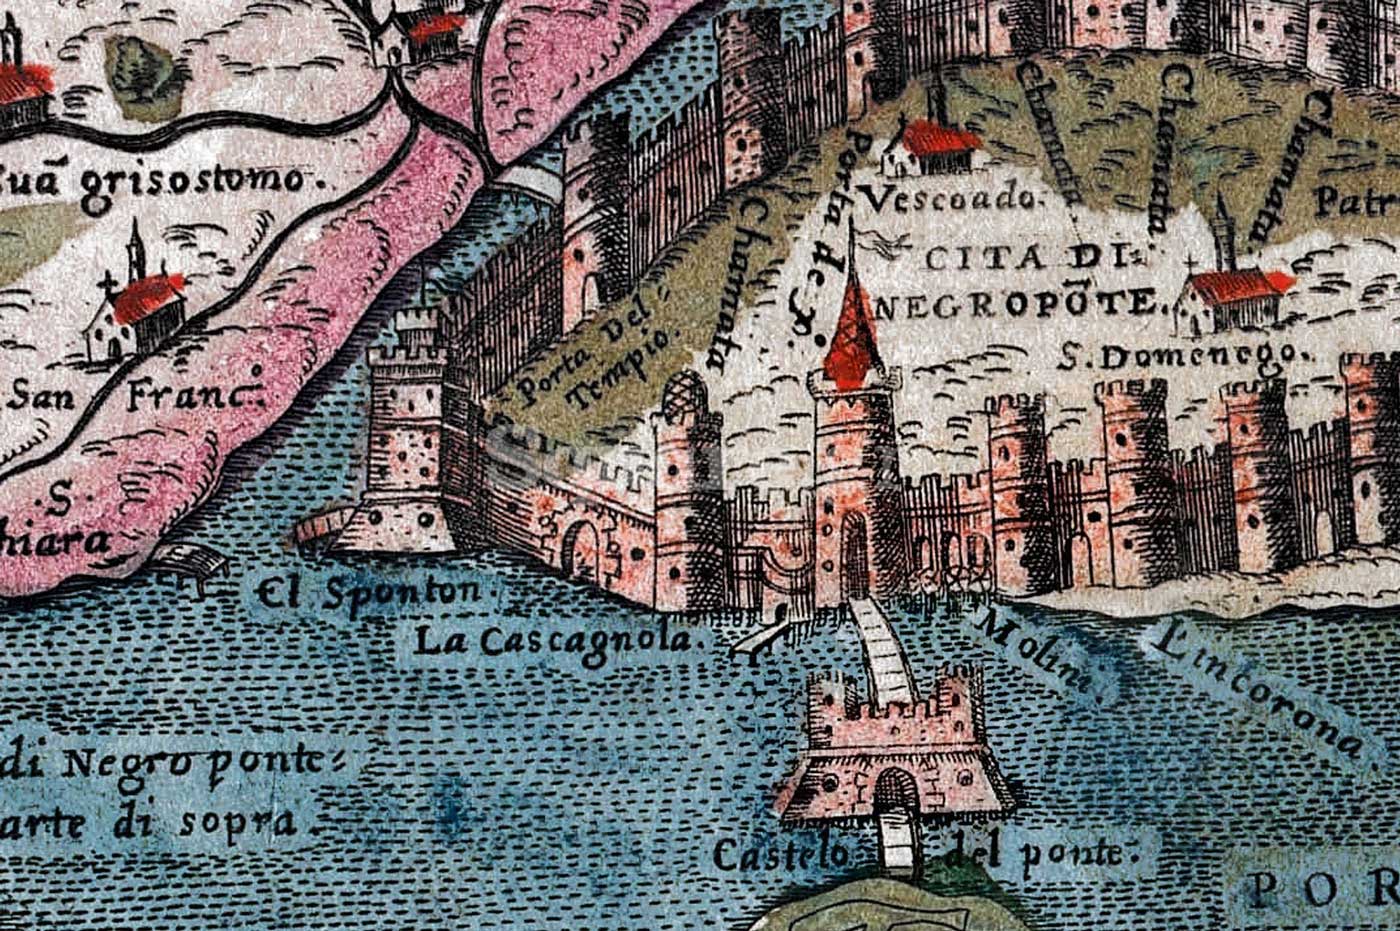 10-Λεπτομέρεια-από-χάρτη-του-Simon-Pinargenti-1573-όπου-φαίνονται-η-Πύλη-La-Castagnola-η-προβλήτα-el-Sponton-και-το-Κάστρο-του-Ευρίπου-με-δύο-πύργους